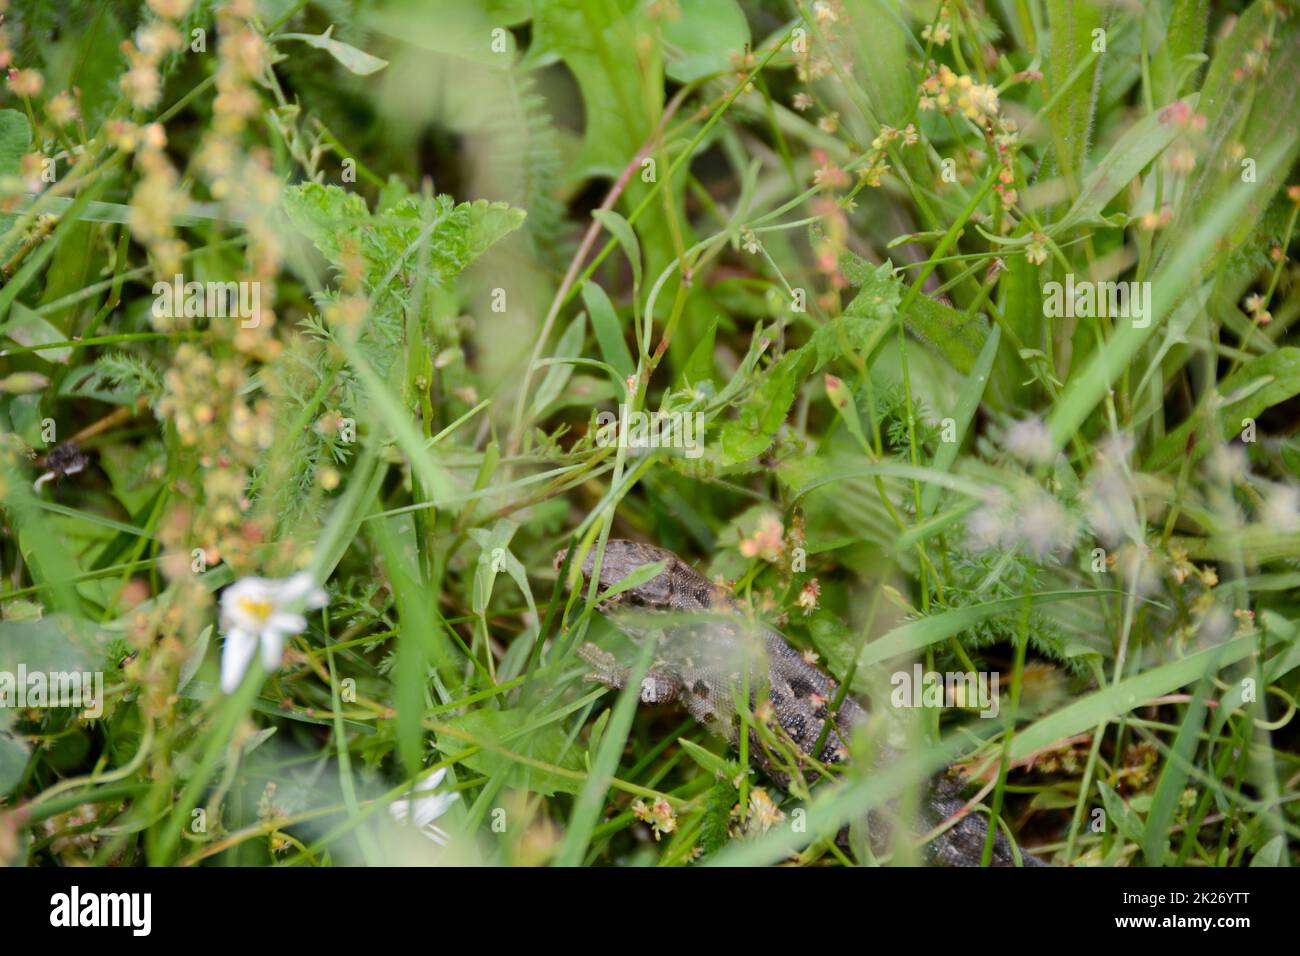 A  lizard hidden in the green grass Stock Photo